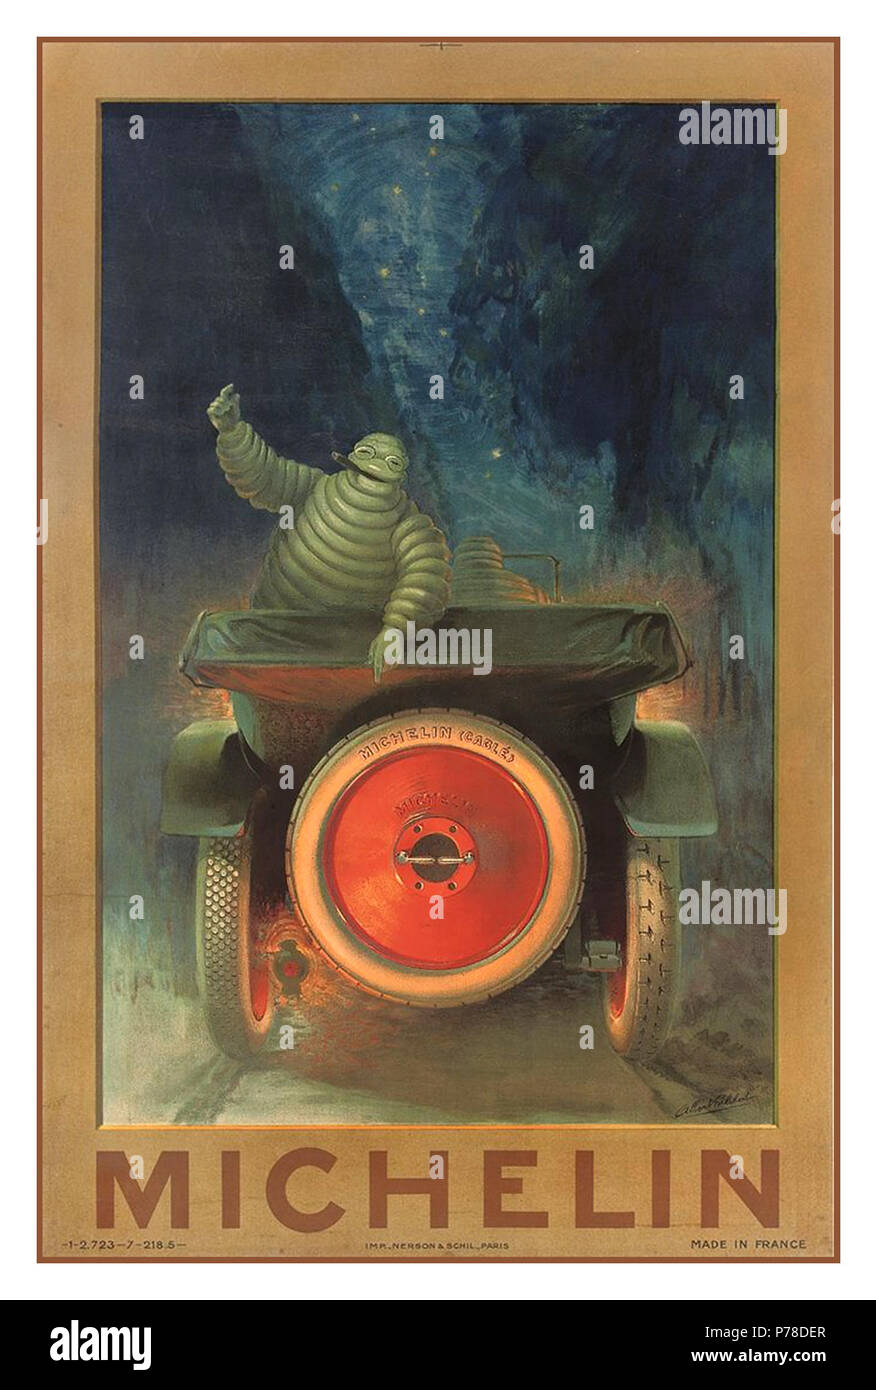 Historique Vintage MICHELIN début de 1900 poster pour les pneus Michelin avec Bibendum Michelin 'homme' en pointant sur pneu de voiture avec MICHELIN CABLÉ impressionné en relief Banque D'Images